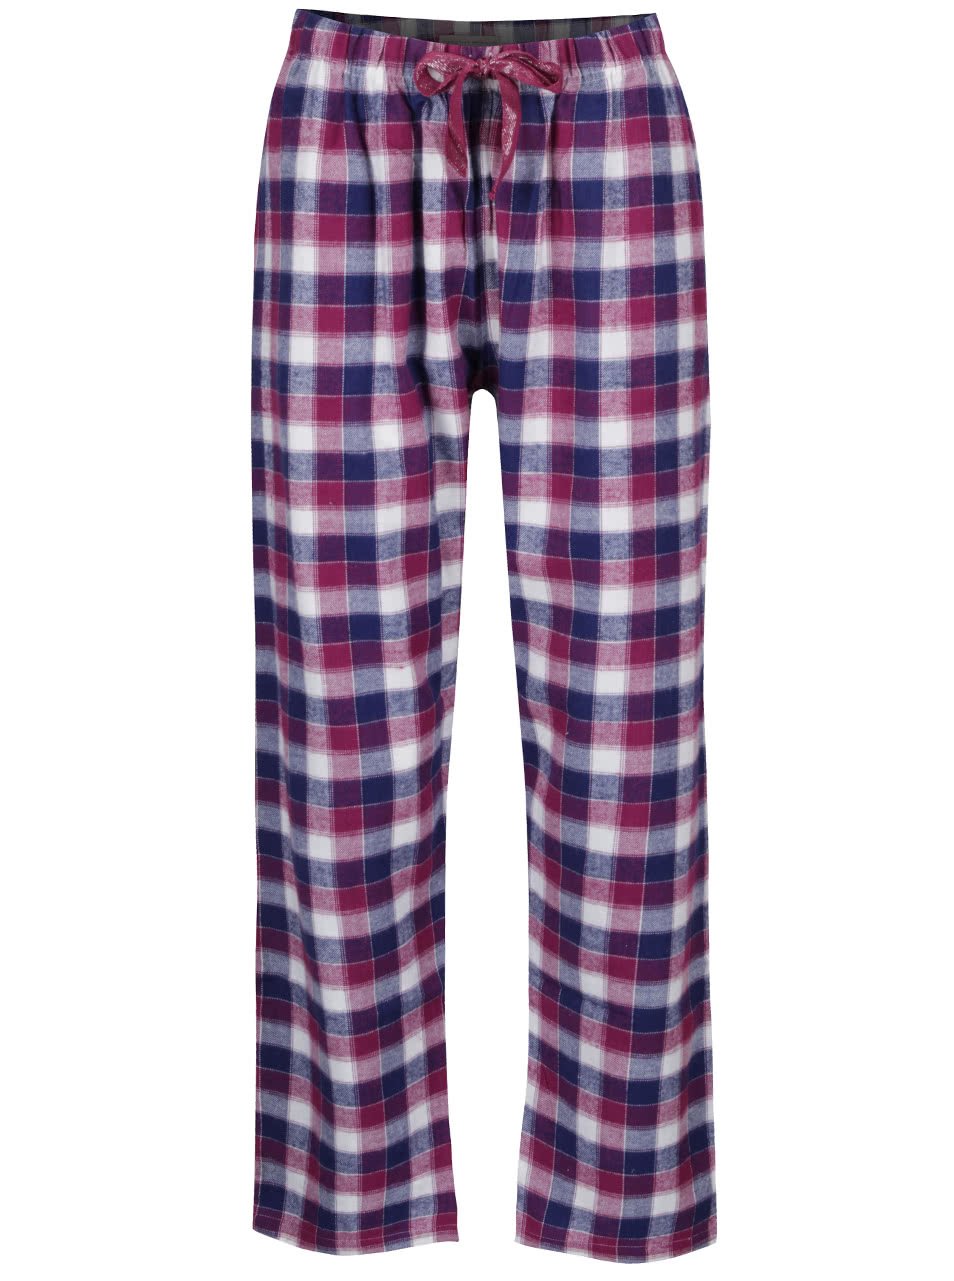 Modro-fialové pyžamové kalhoty Dorothy Perkins